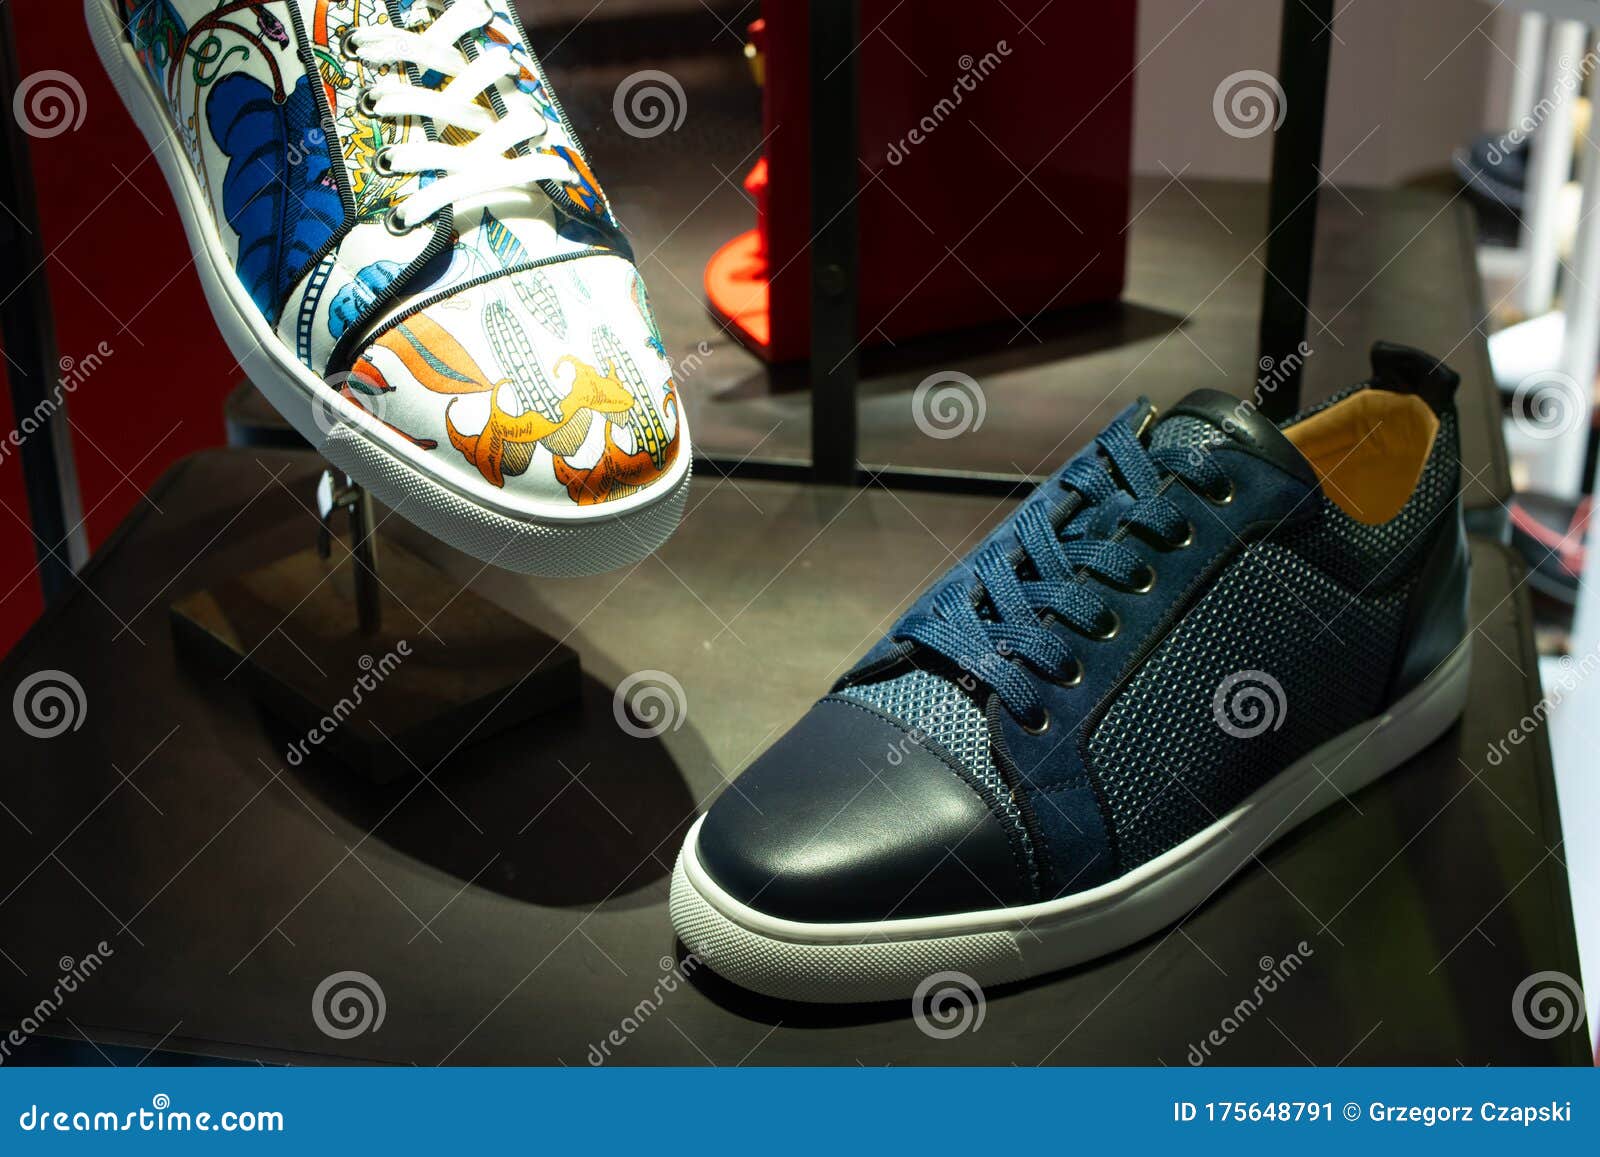 designer shoes louboutin sale